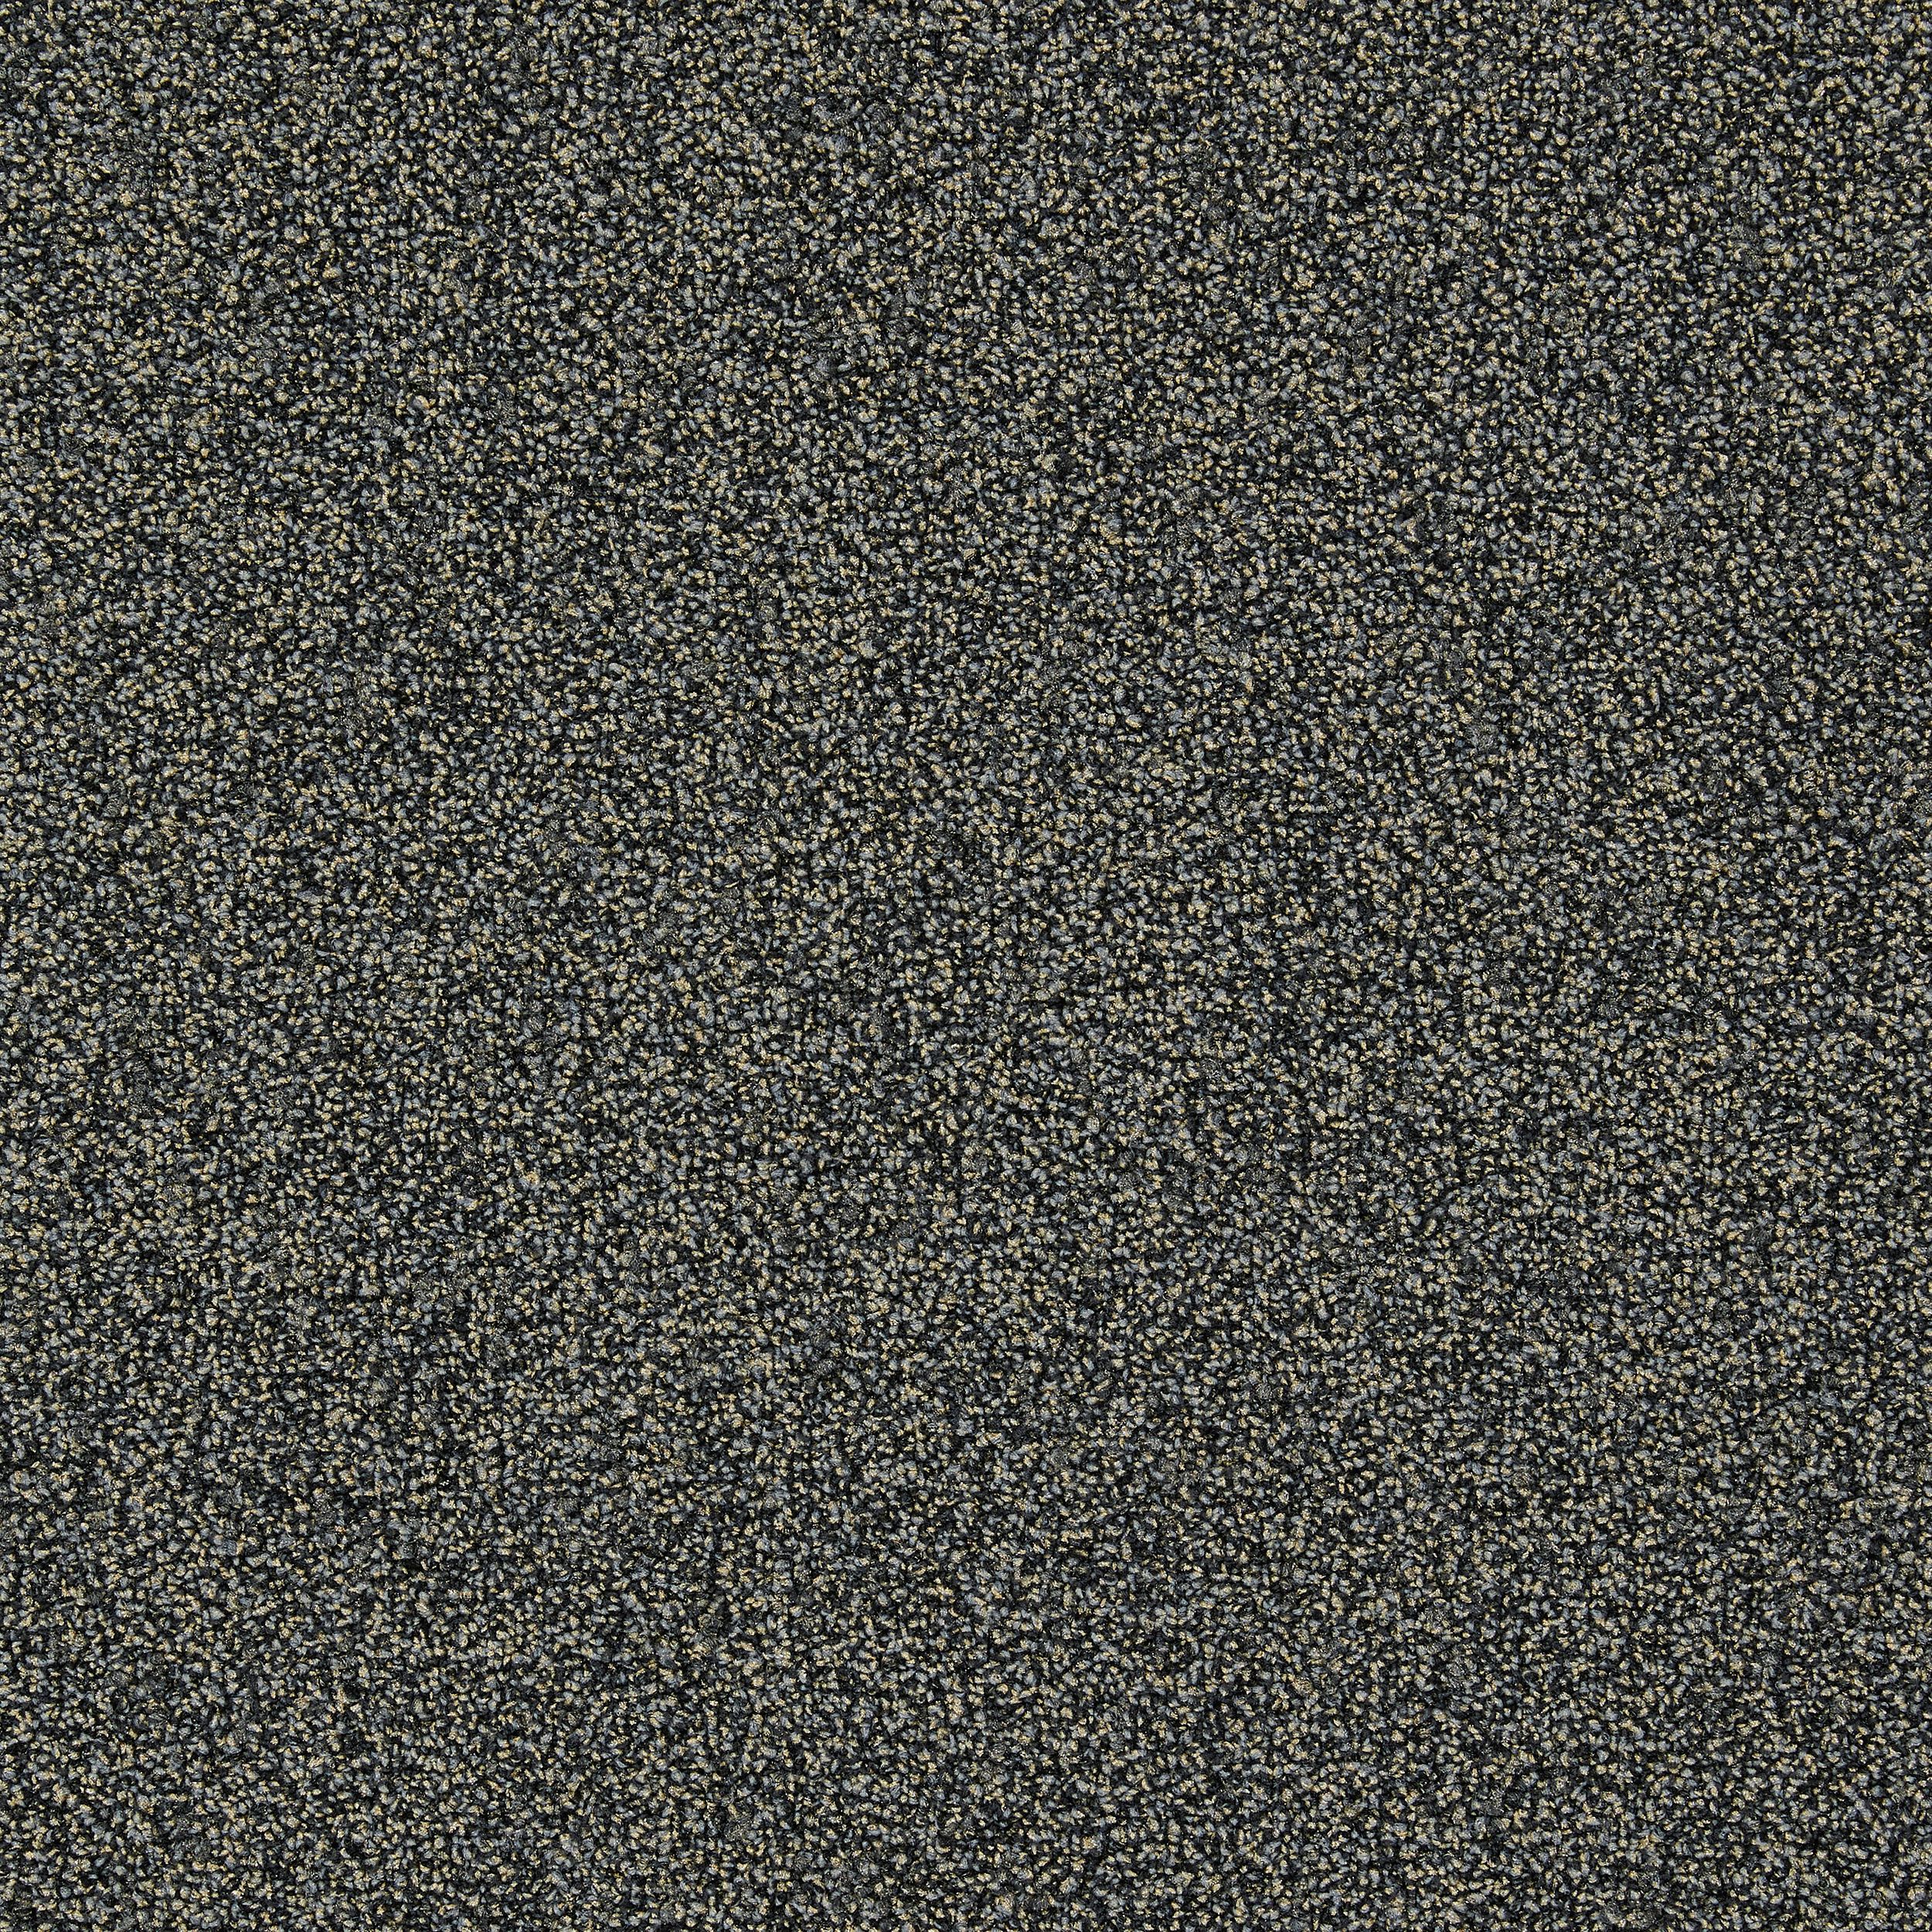 Dolomite Carpet Tile In Golden Beryl afbeeldingnummer 2